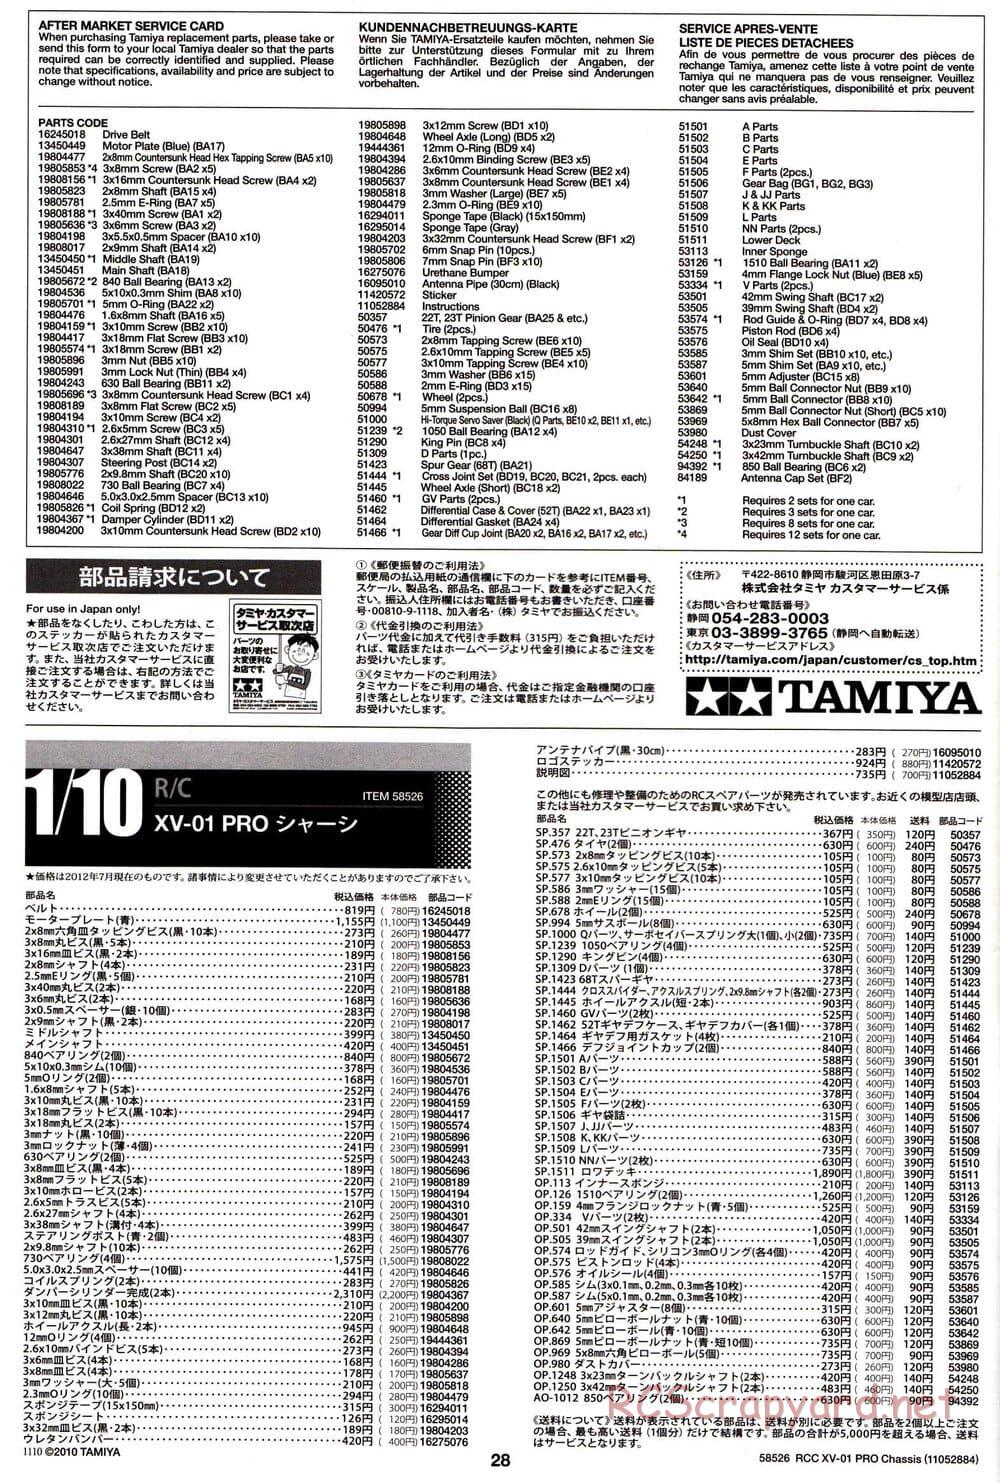 Tamiya - XV-01 PRO Chassis - Manual - Page 28